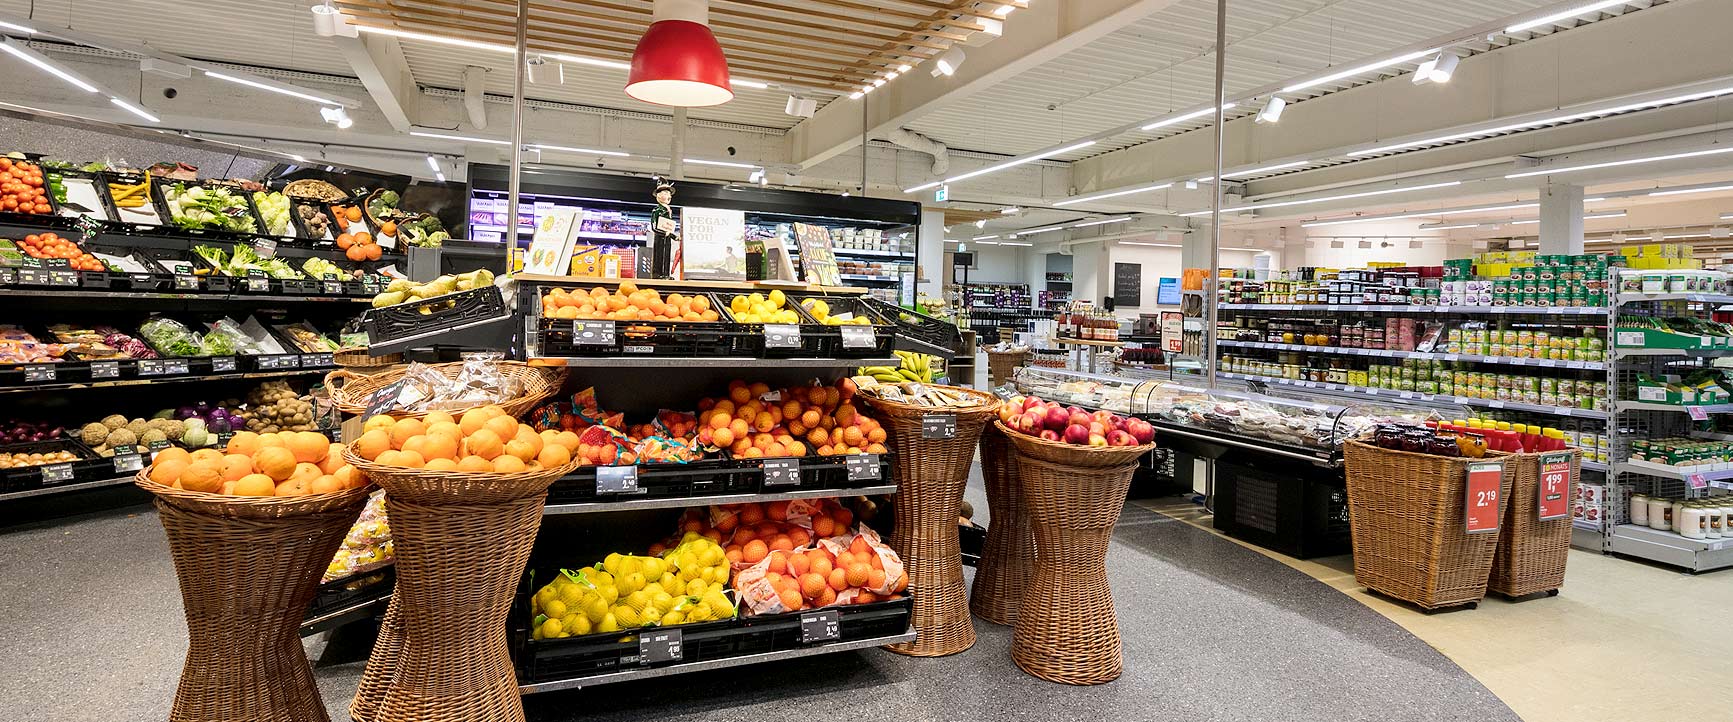 Bild der Obst- & Gemüseabteilung im Kaufhaus Hubmann